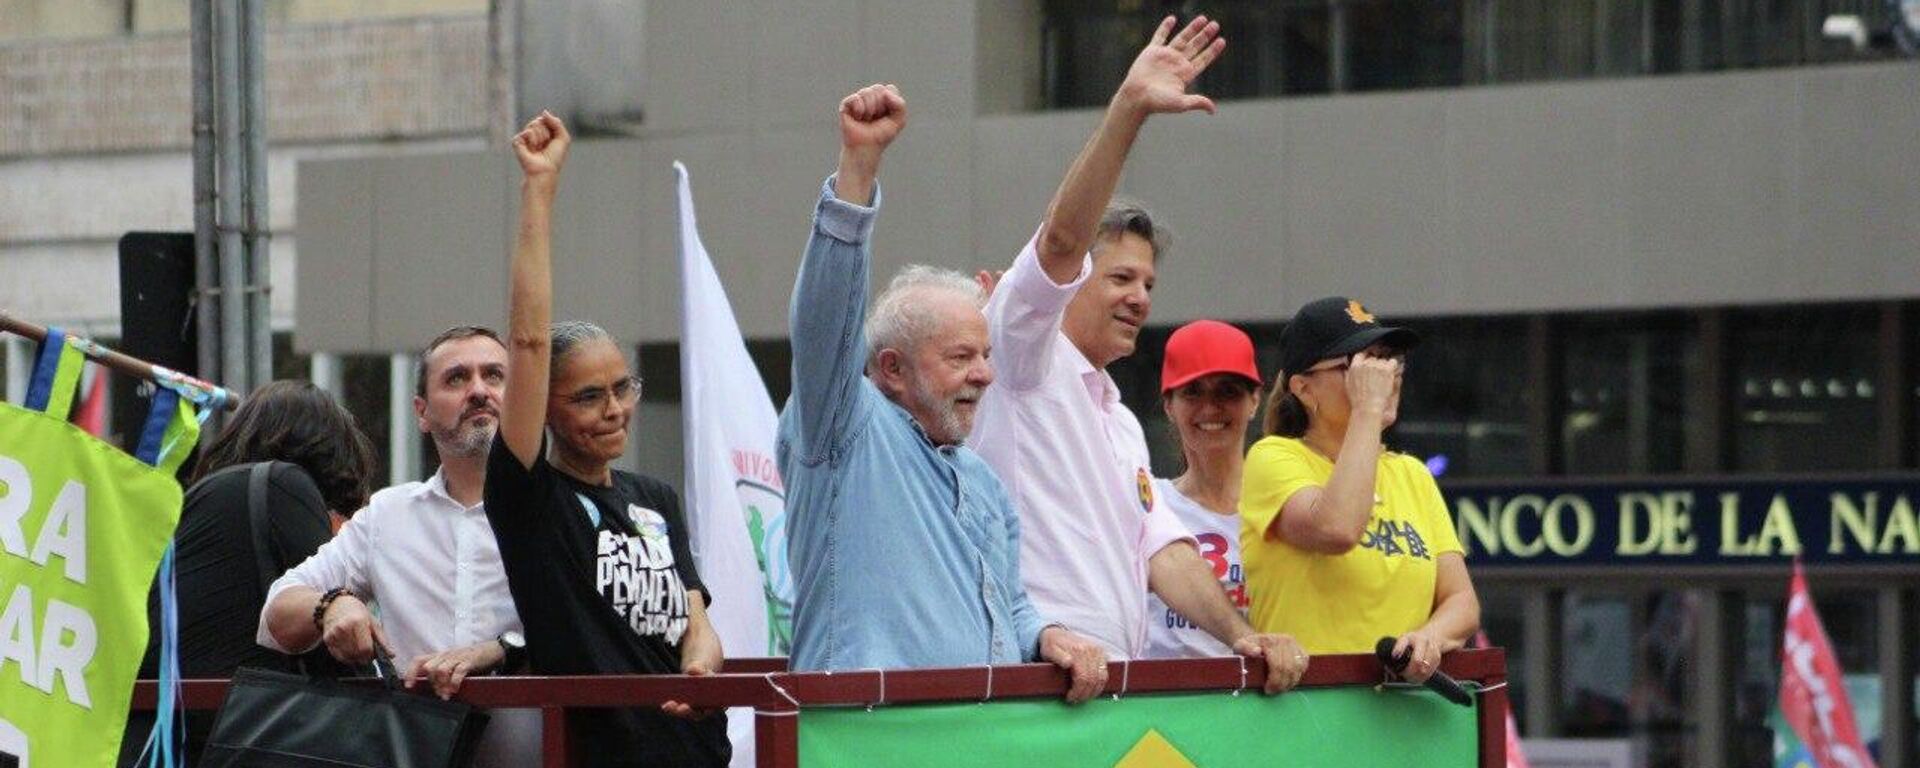 El exmandatario brasileño, Lula da Silva, en su último acto de campaña antes de la segunda vuelta de las elecciones - Sputnik Mundo, 1920, 30.10.2022